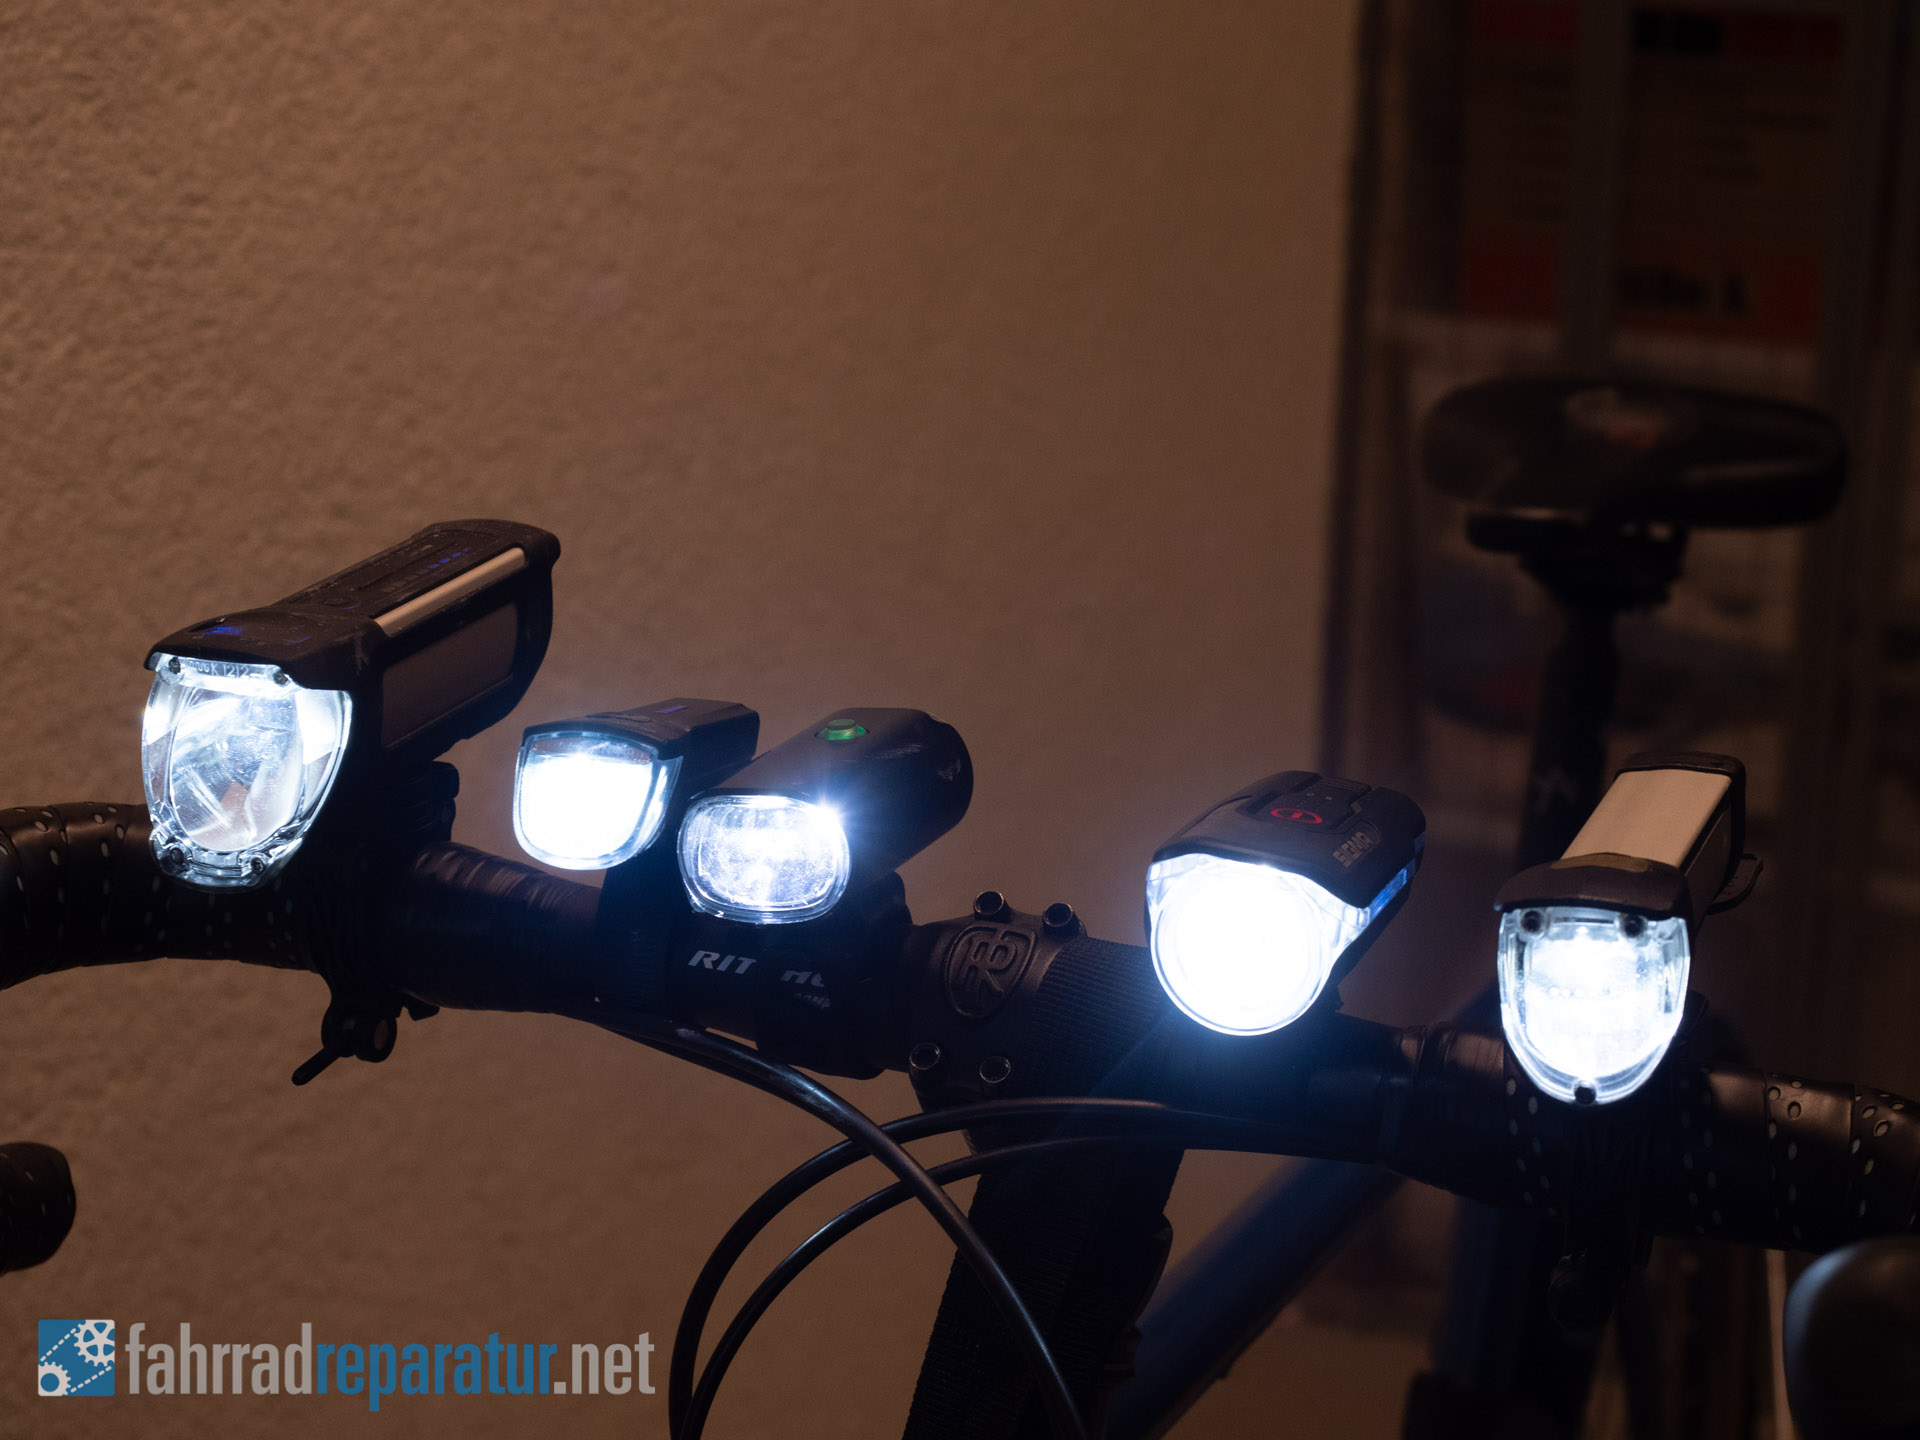 Fahrradbeleuchtung im Test: Bestes Licht fürs Fahrrad